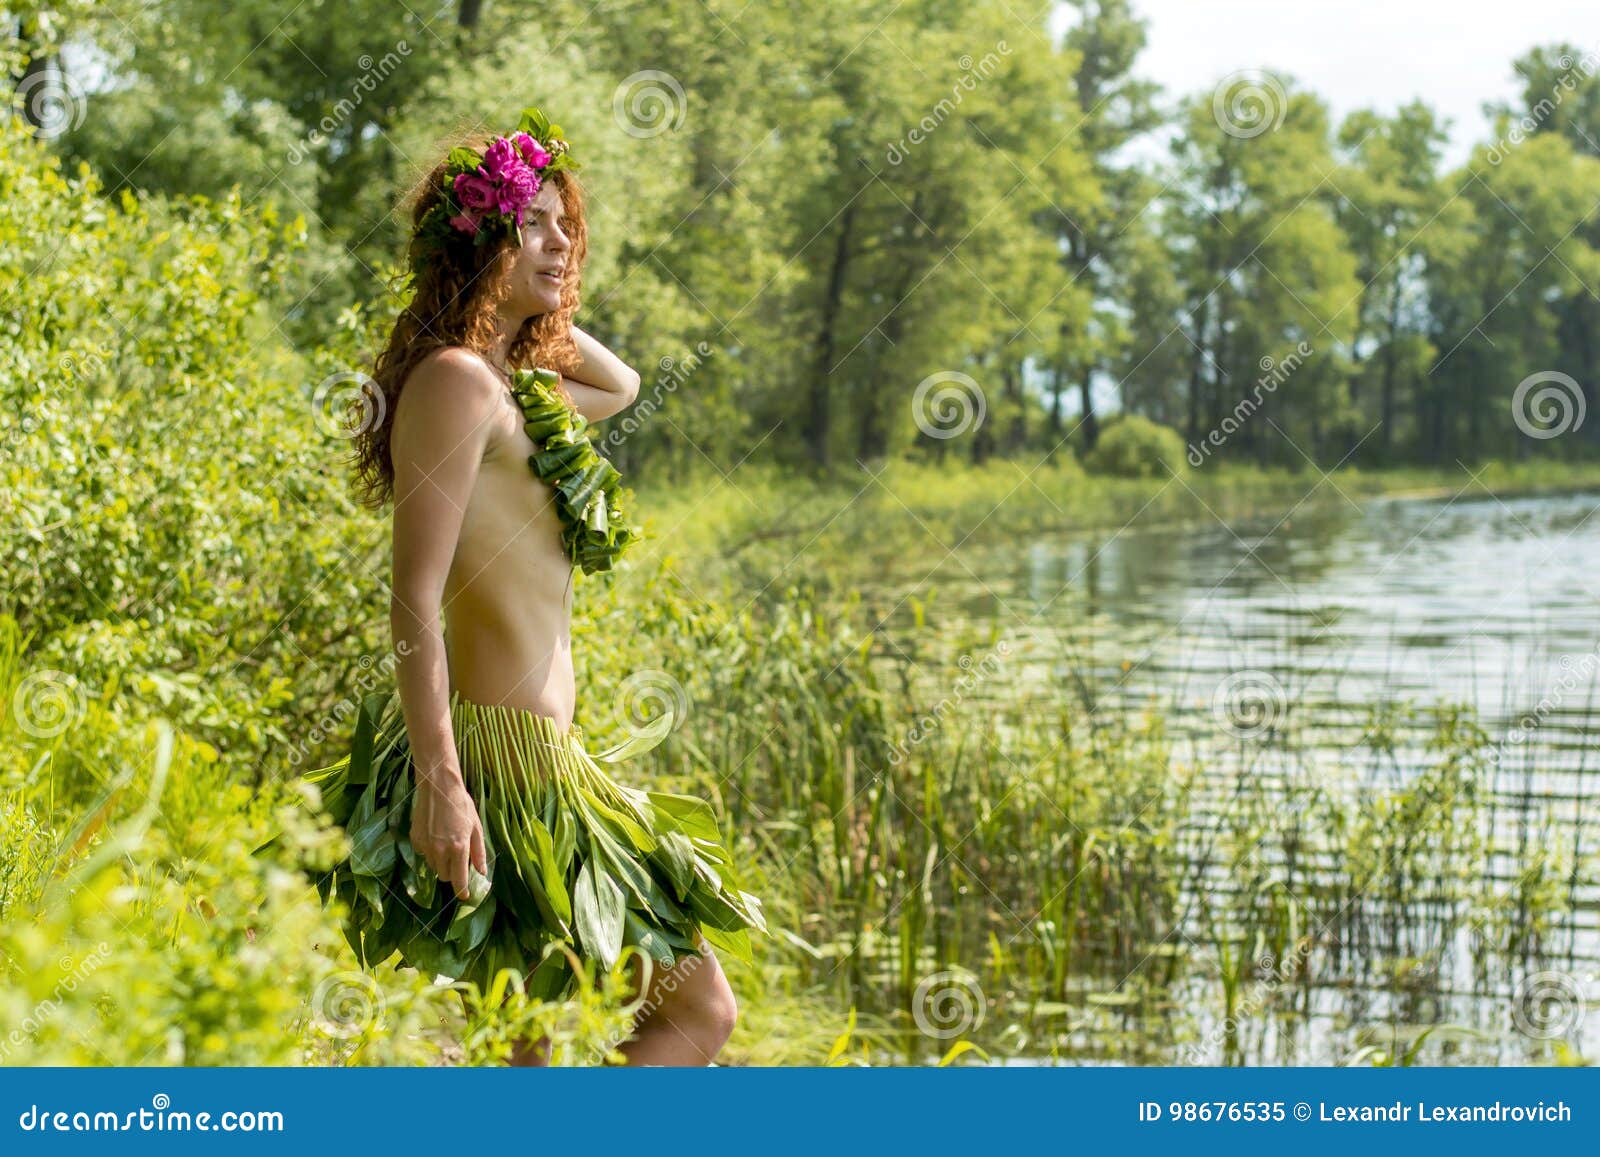 Naked Girls At The River Lake